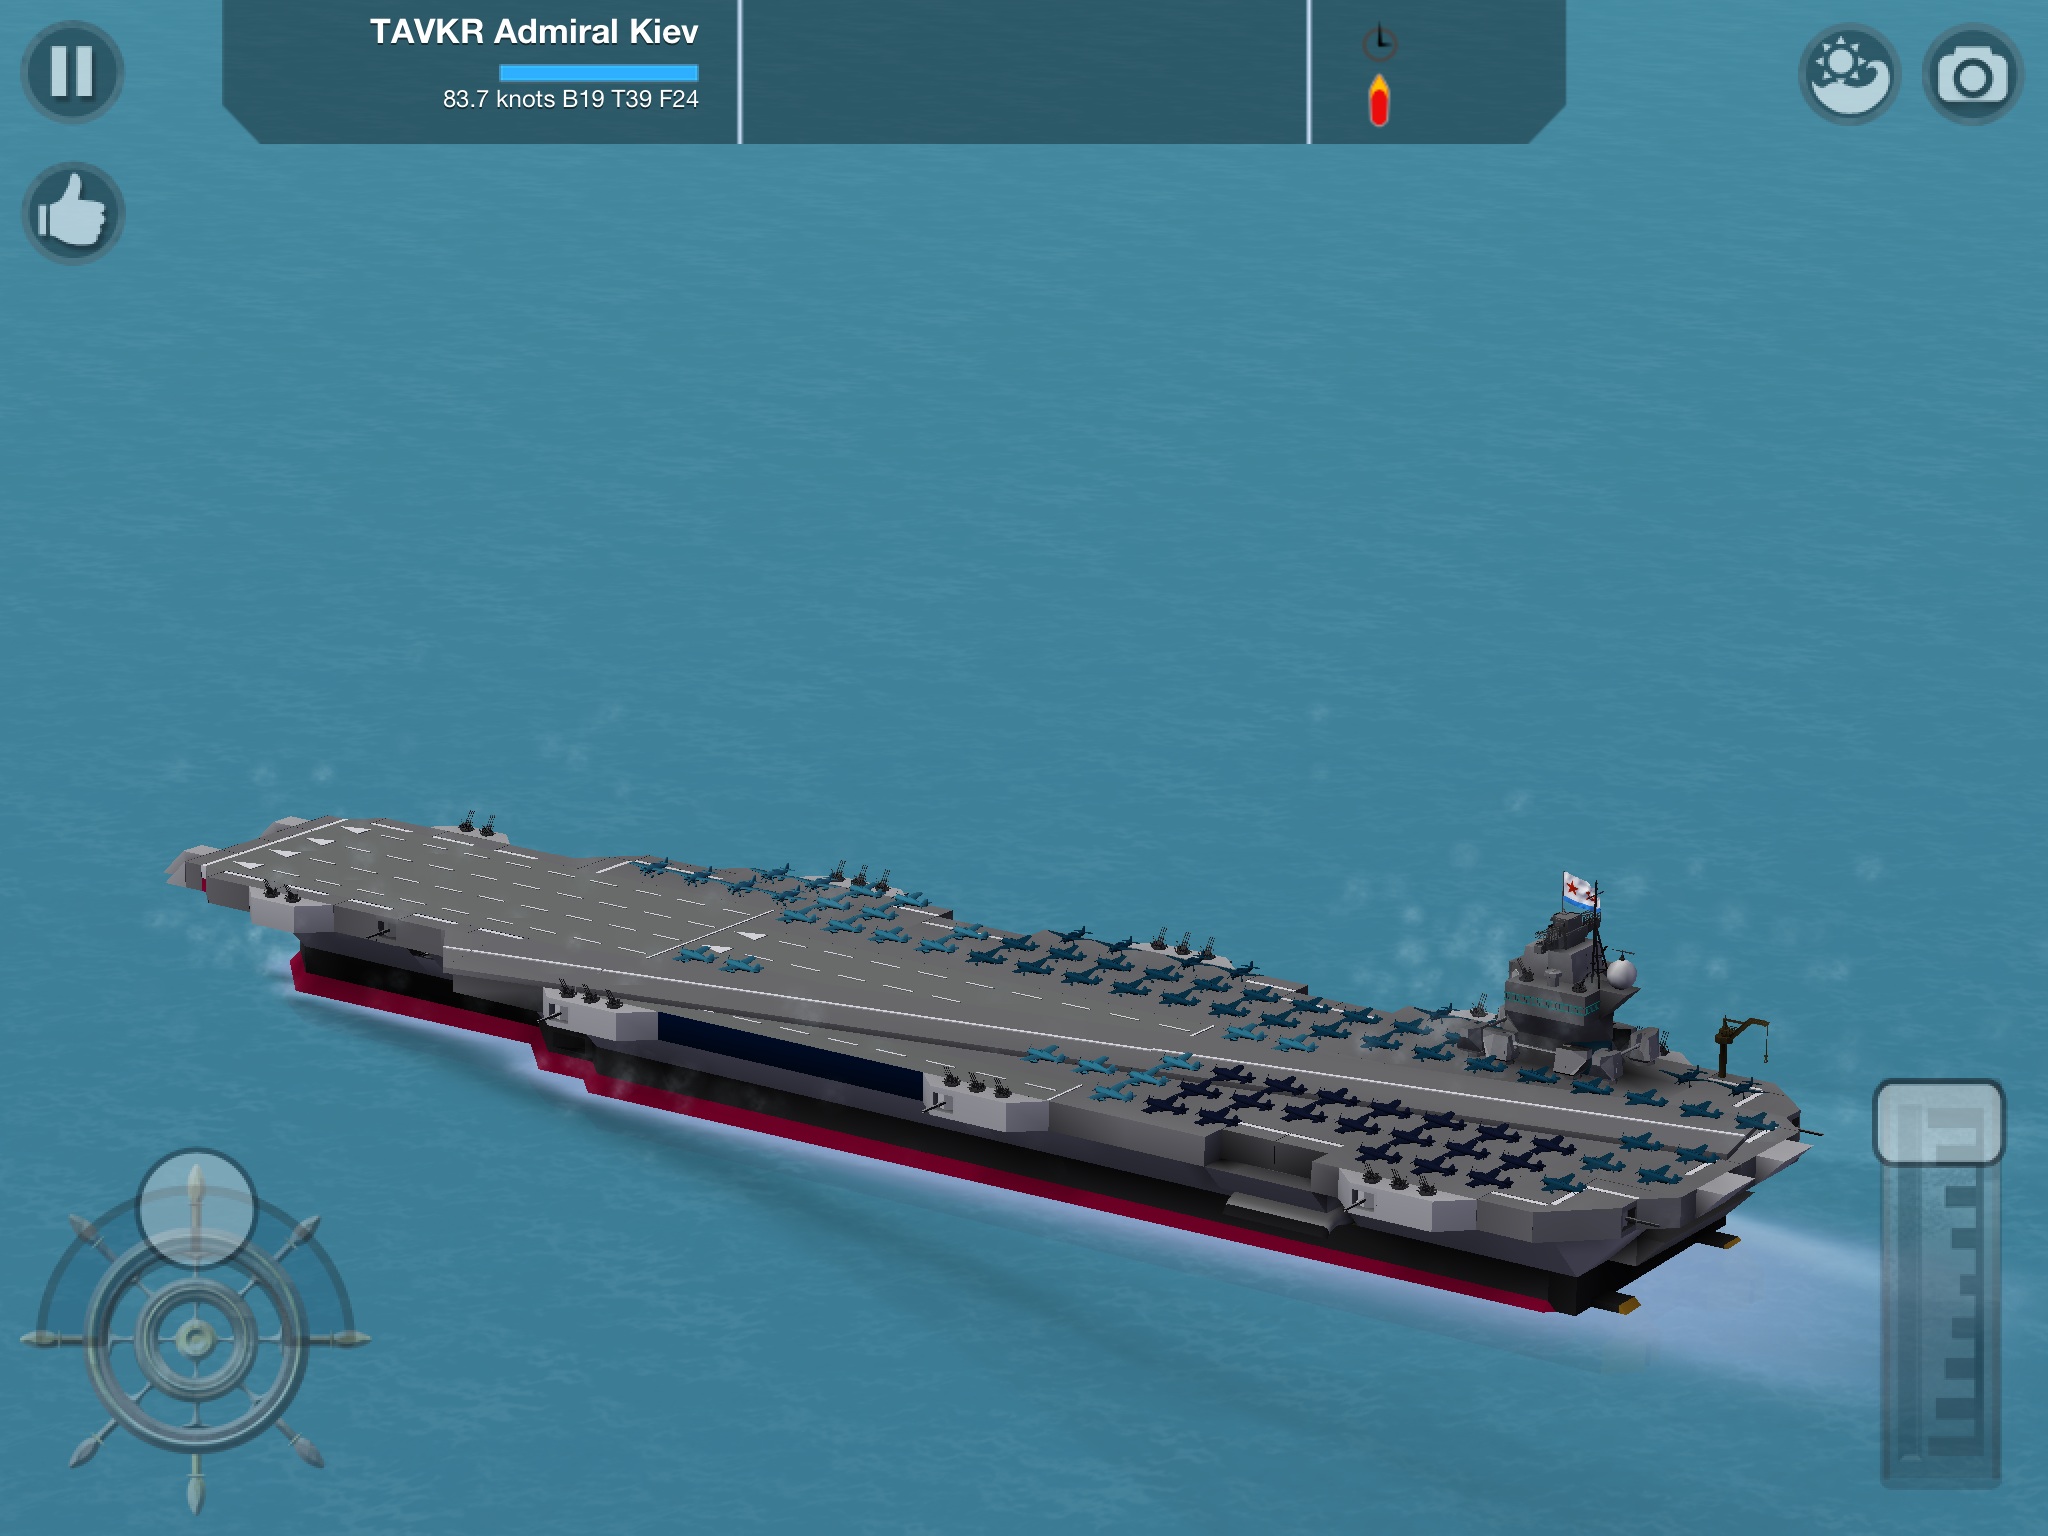 download warship craft